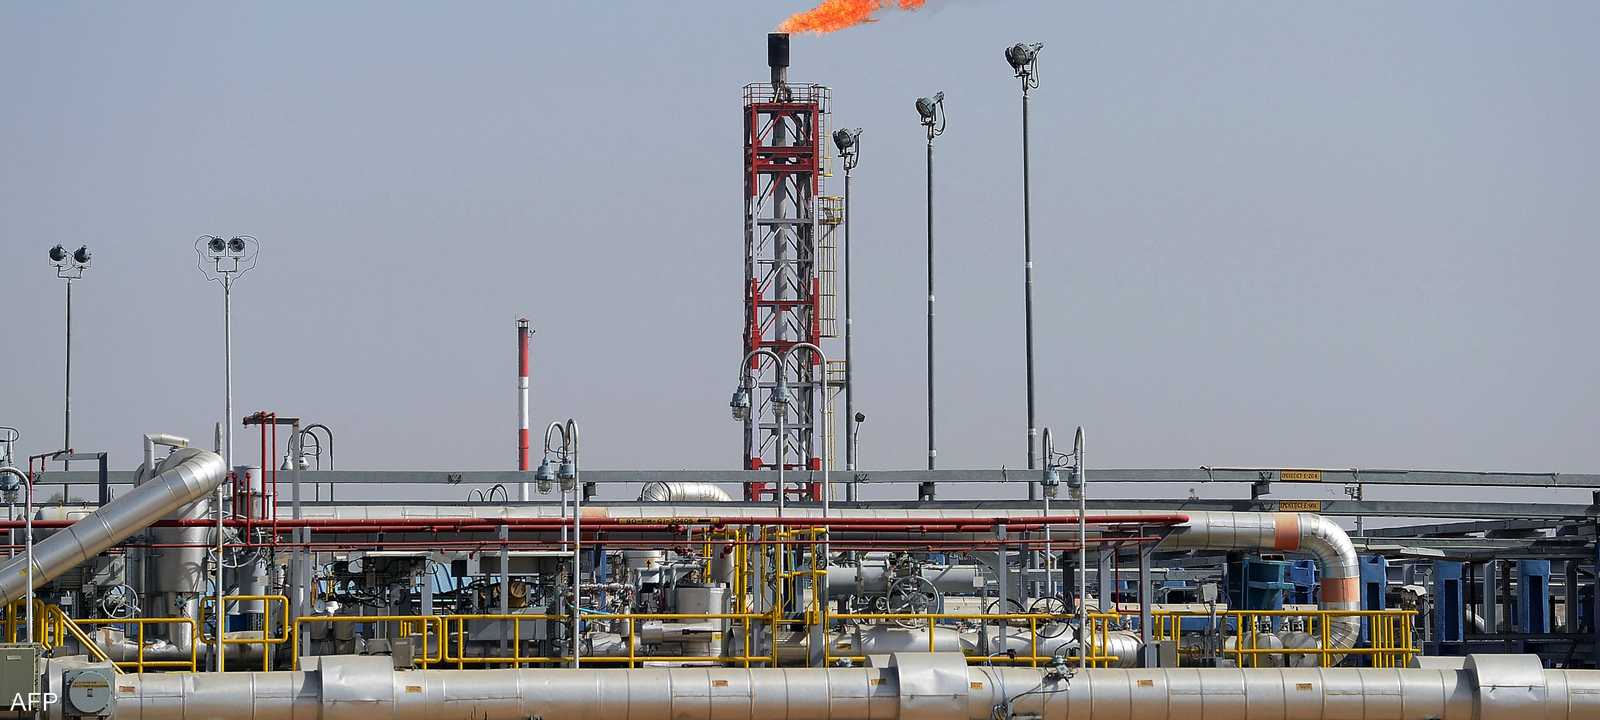 واردات النفط الهندية من روسيا ترتفع في يناير